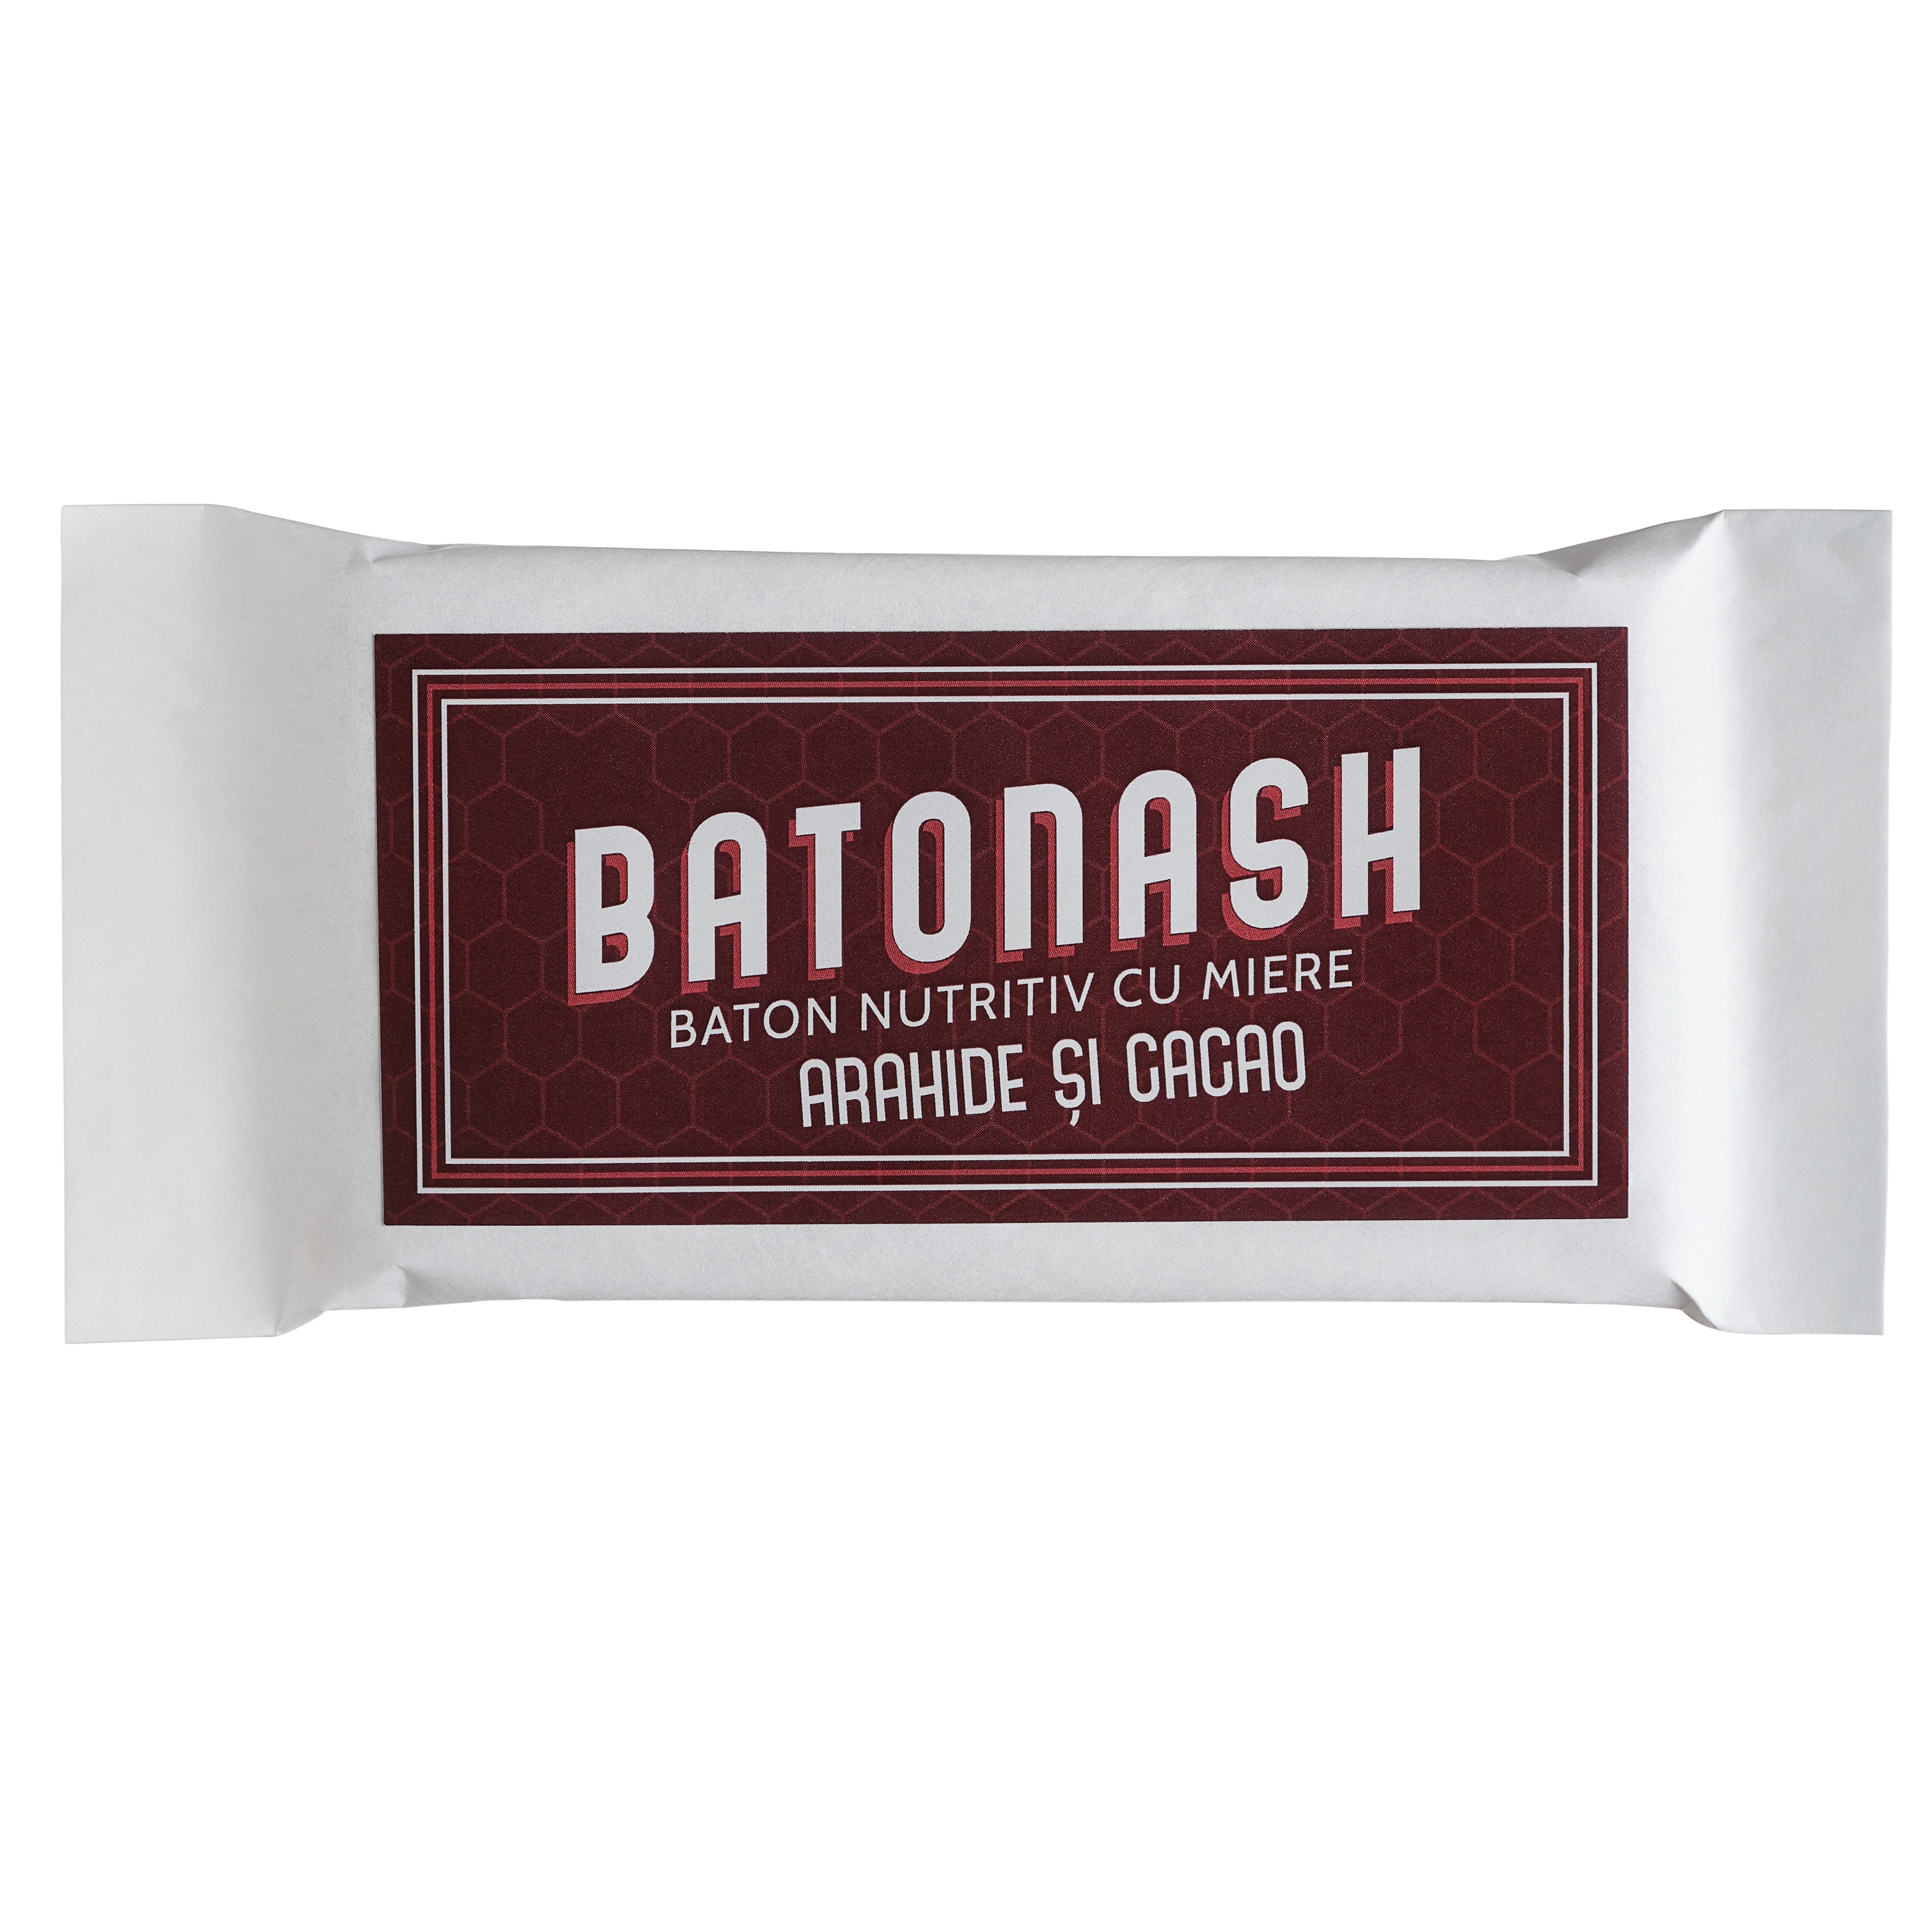 BATONASH Arahide și Cacao, 50g